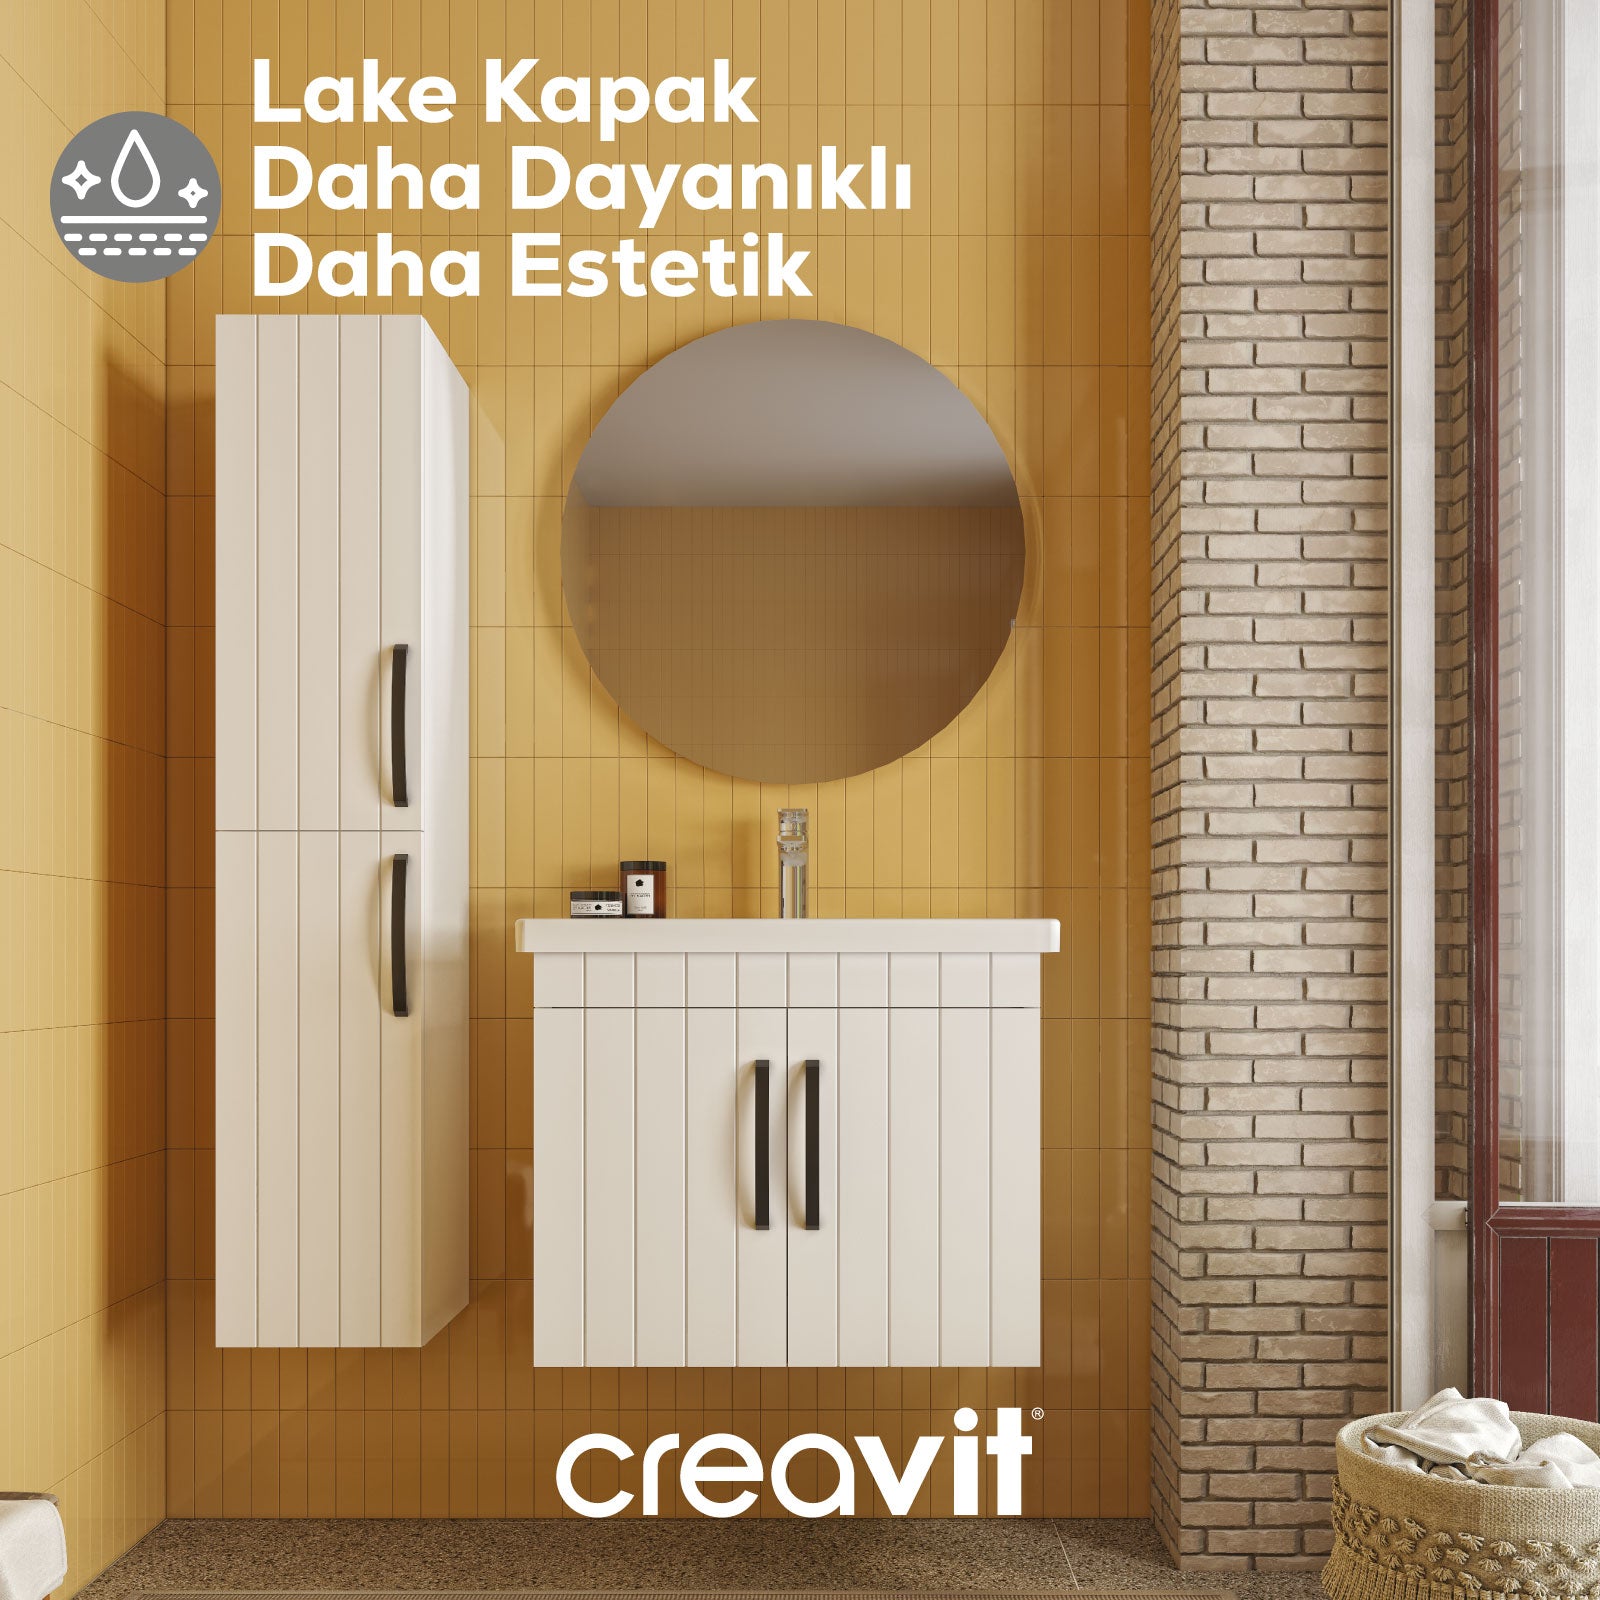 D10 40 cm Sağ Boy Dolabı Dafne Melamin Gövde Lake Kapak - Creavit | Banyo Bu Tarafta